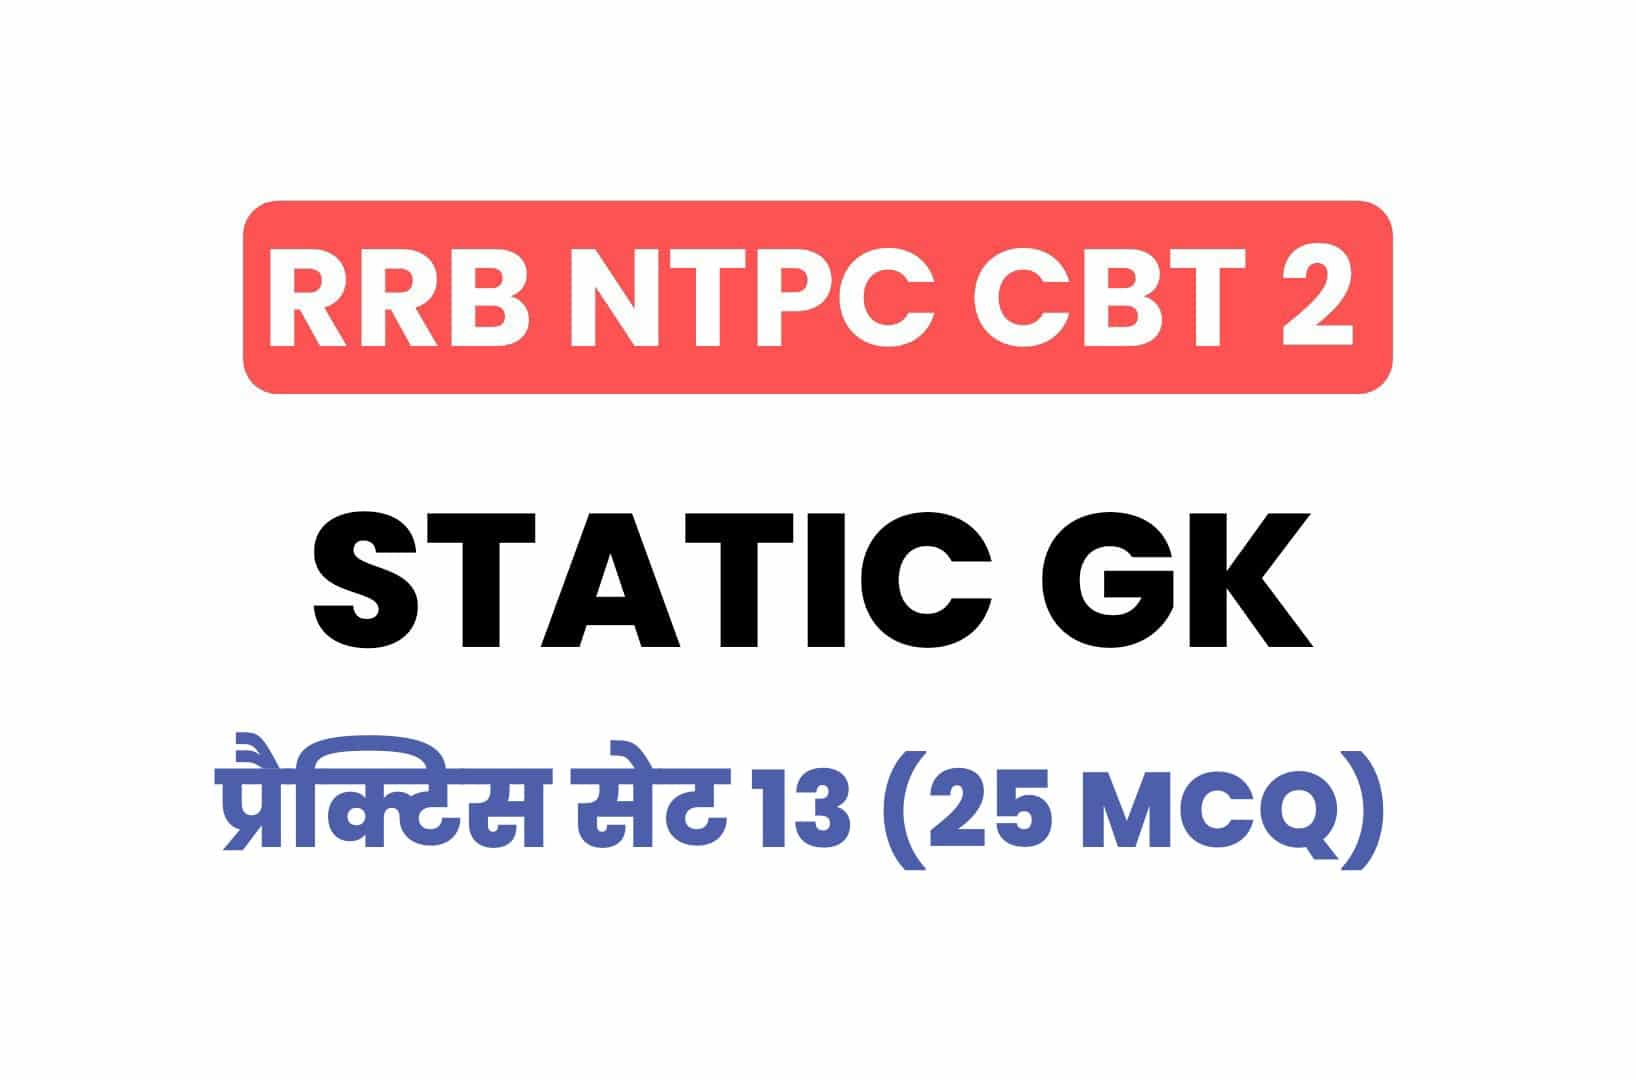 RRB NTPC CBT 2 Static GK प्रैक्टिस सेट 13: परीक्षा में पूछें गये महत्वपूर्ण प्रश्न, अवश्य पढ़ें